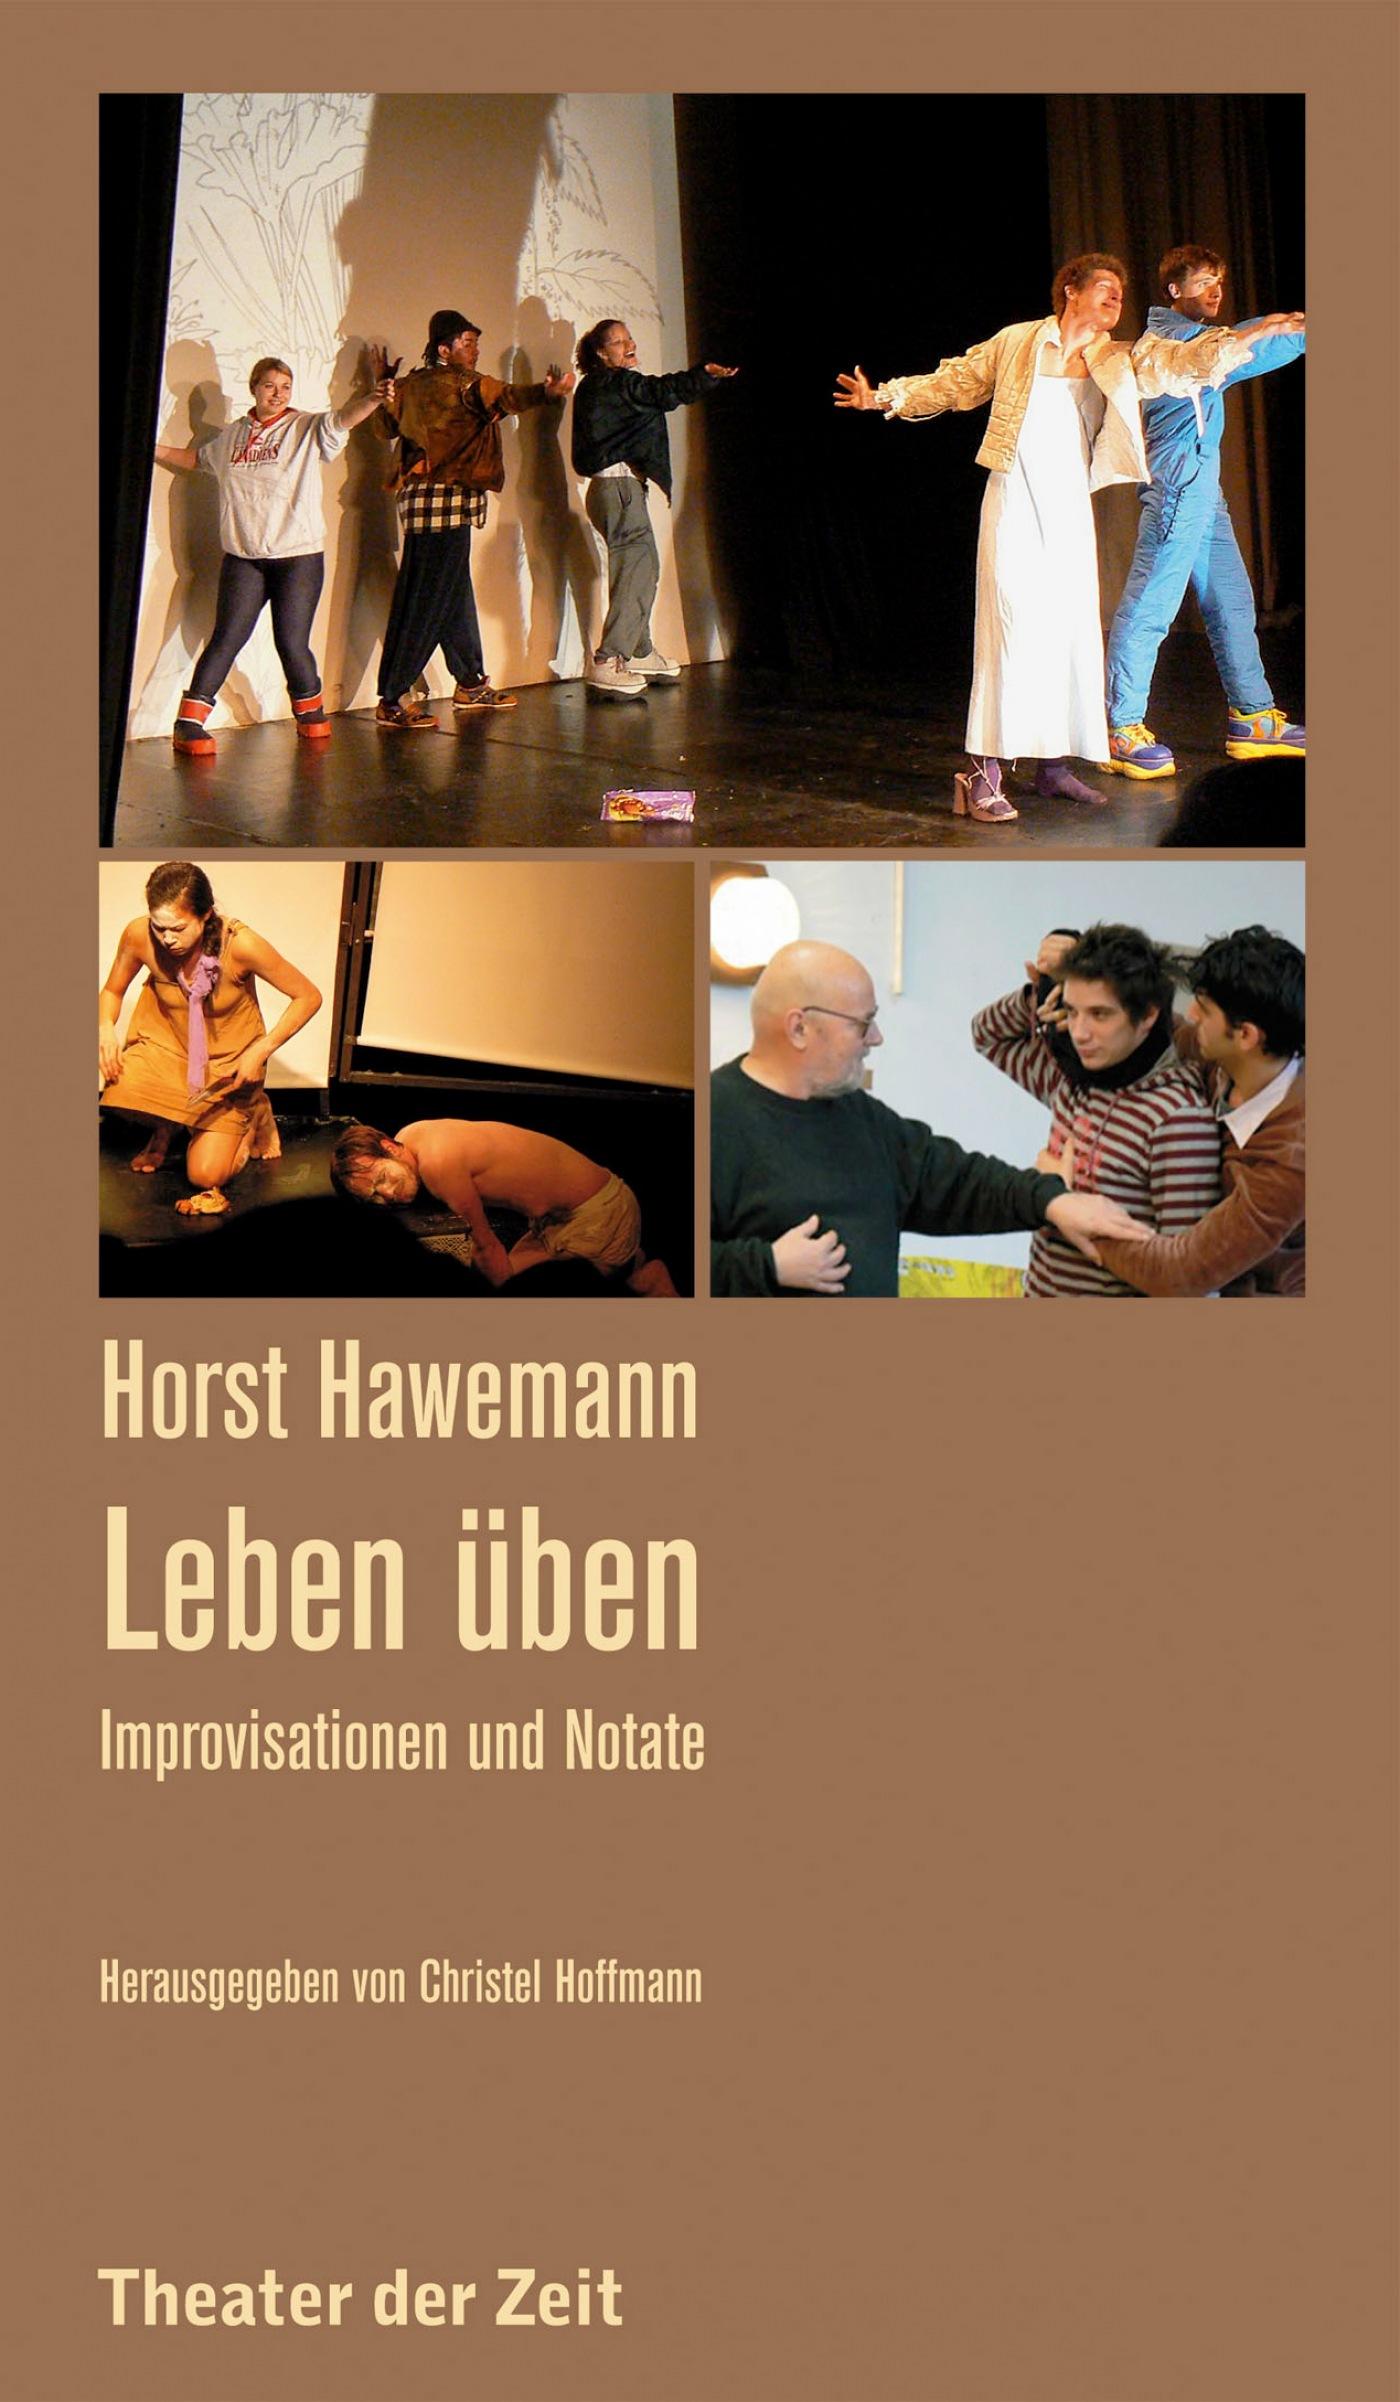 Recherchen 108 "Horst Hawemann - Leben üben"